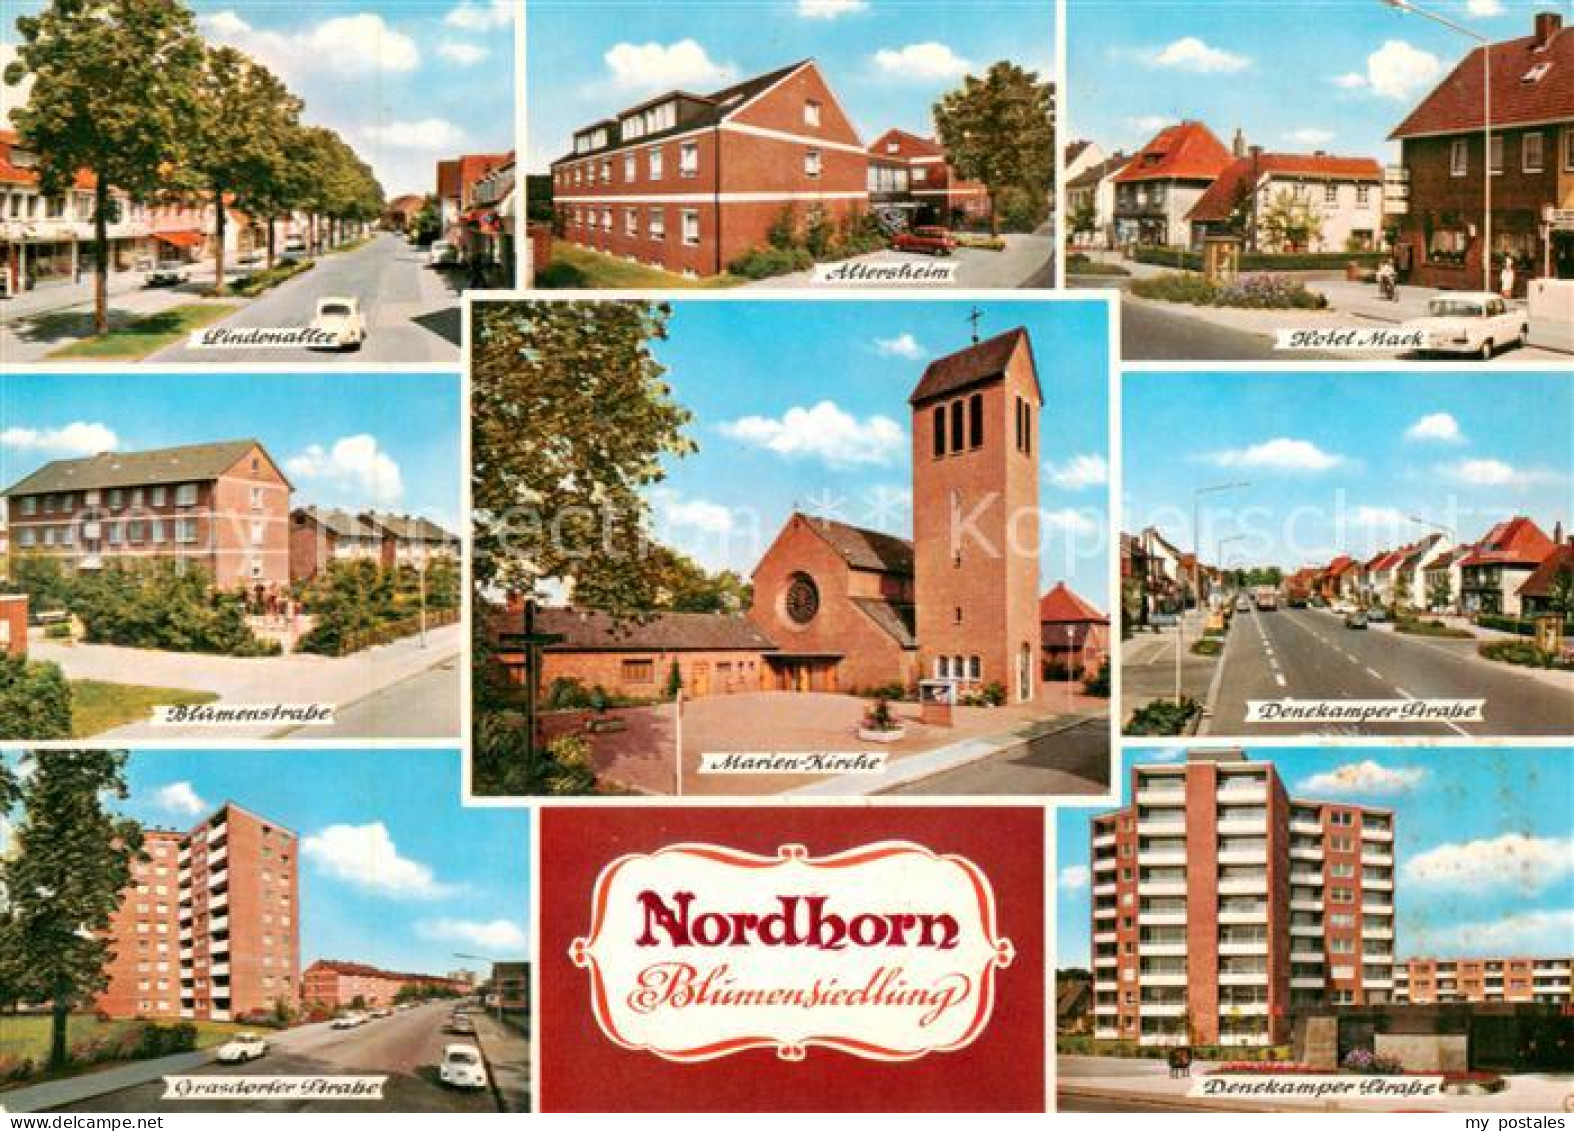 73814339 Nordhorn Lindenallee Altersheim Hotel Mack Blumenstrasse Marien Kirche  - Nordhorn